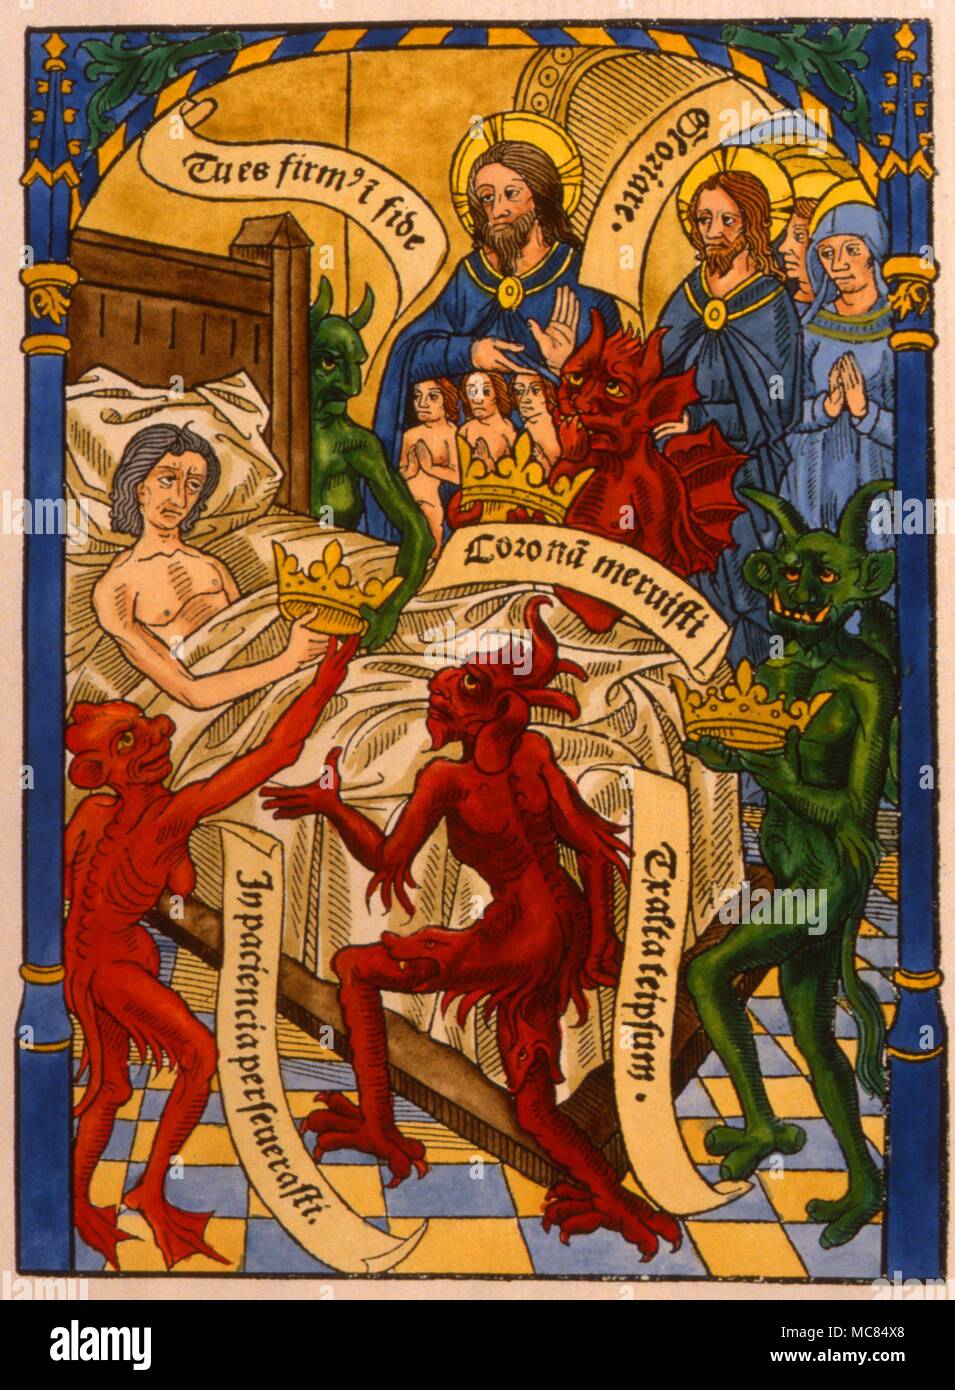 Holzschnitt, der die Dämonen und Engel Attendant am Sterbebett, betreut durch Christus. Von einem 'Ars moriendi Bene' [die Kunst des Sterbens gut], der circa 1500. Stockfoto